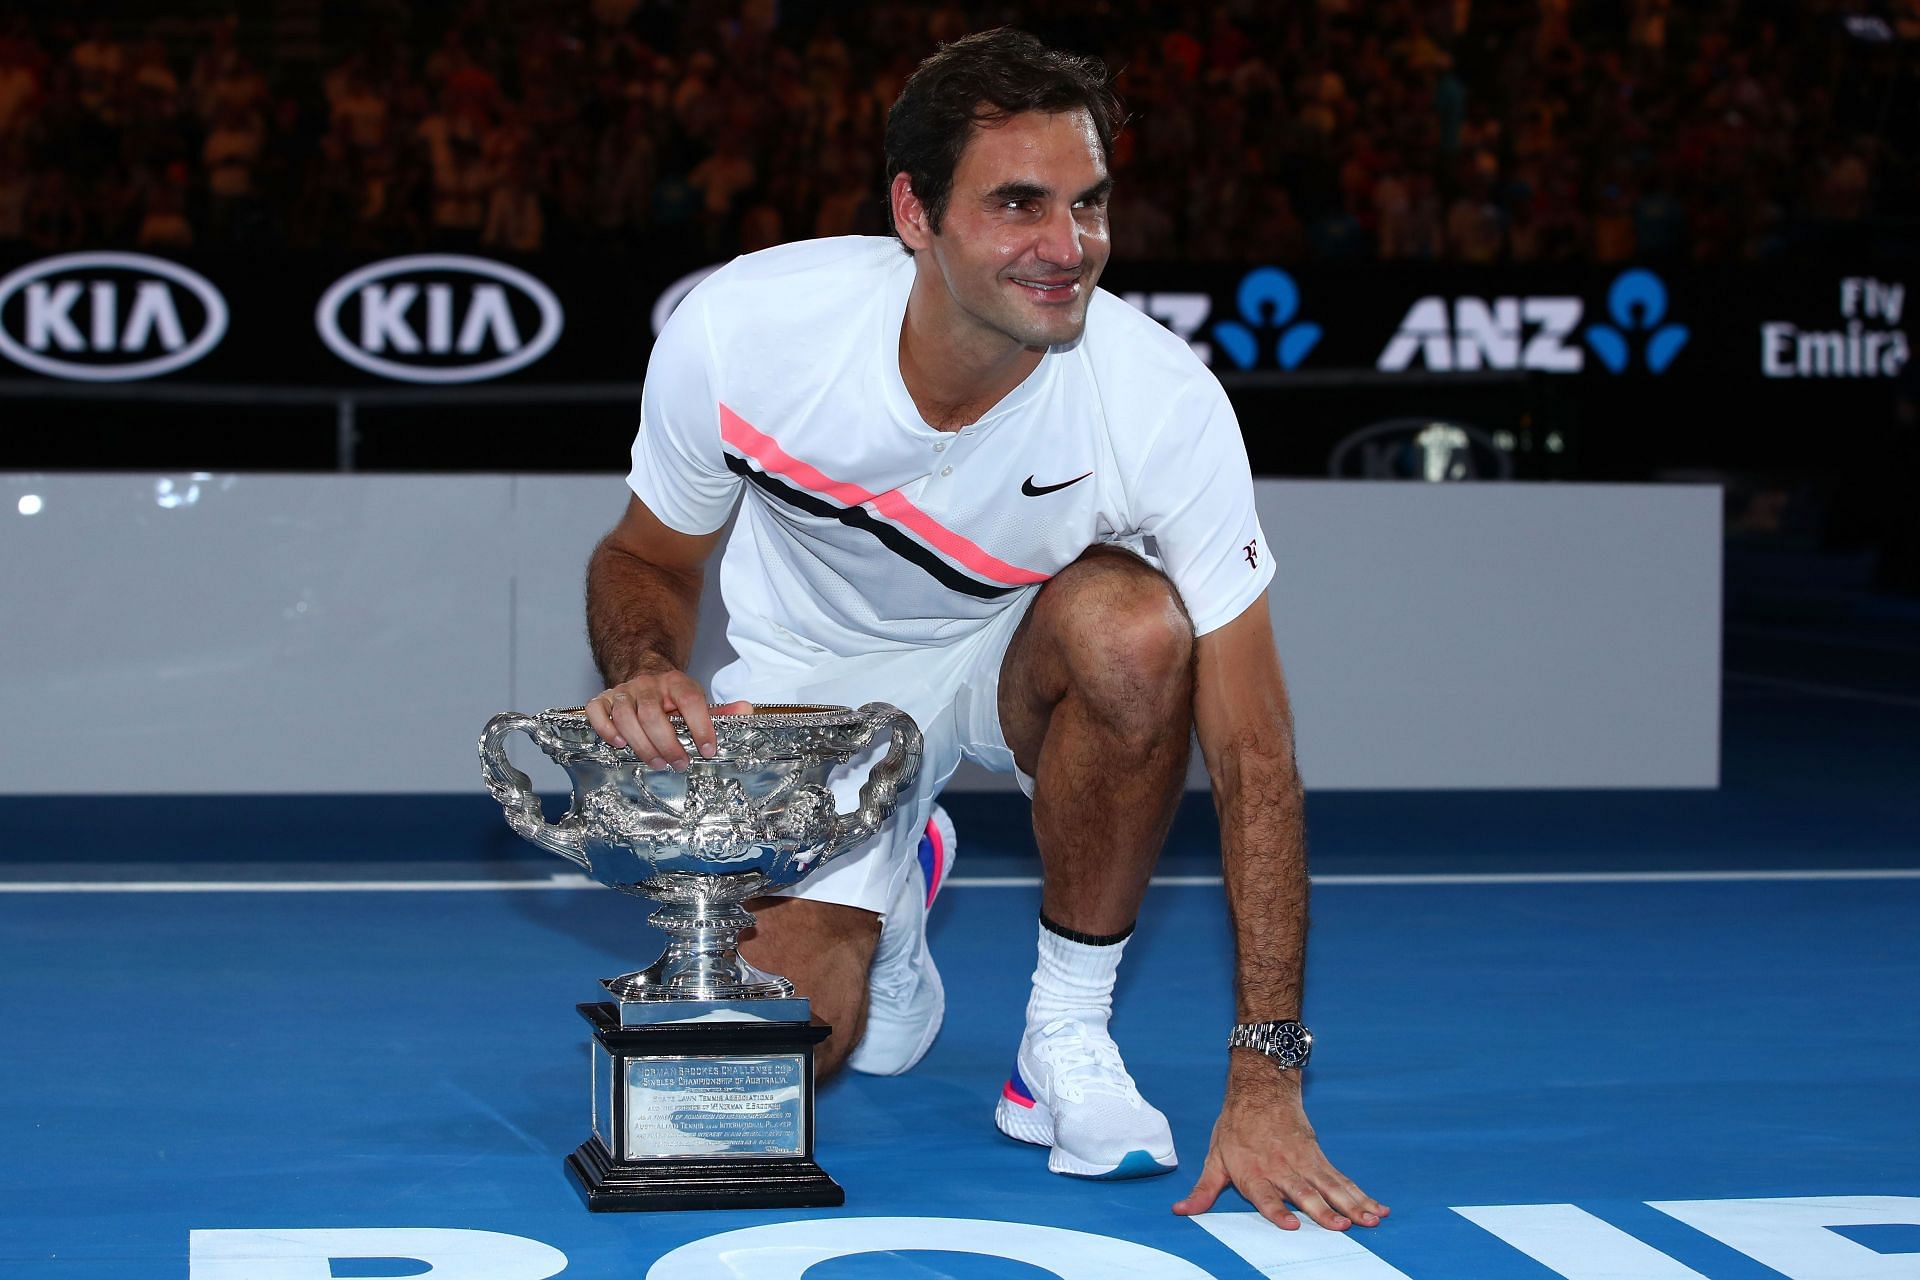 Roger Federer won 20 Grand Slam titles